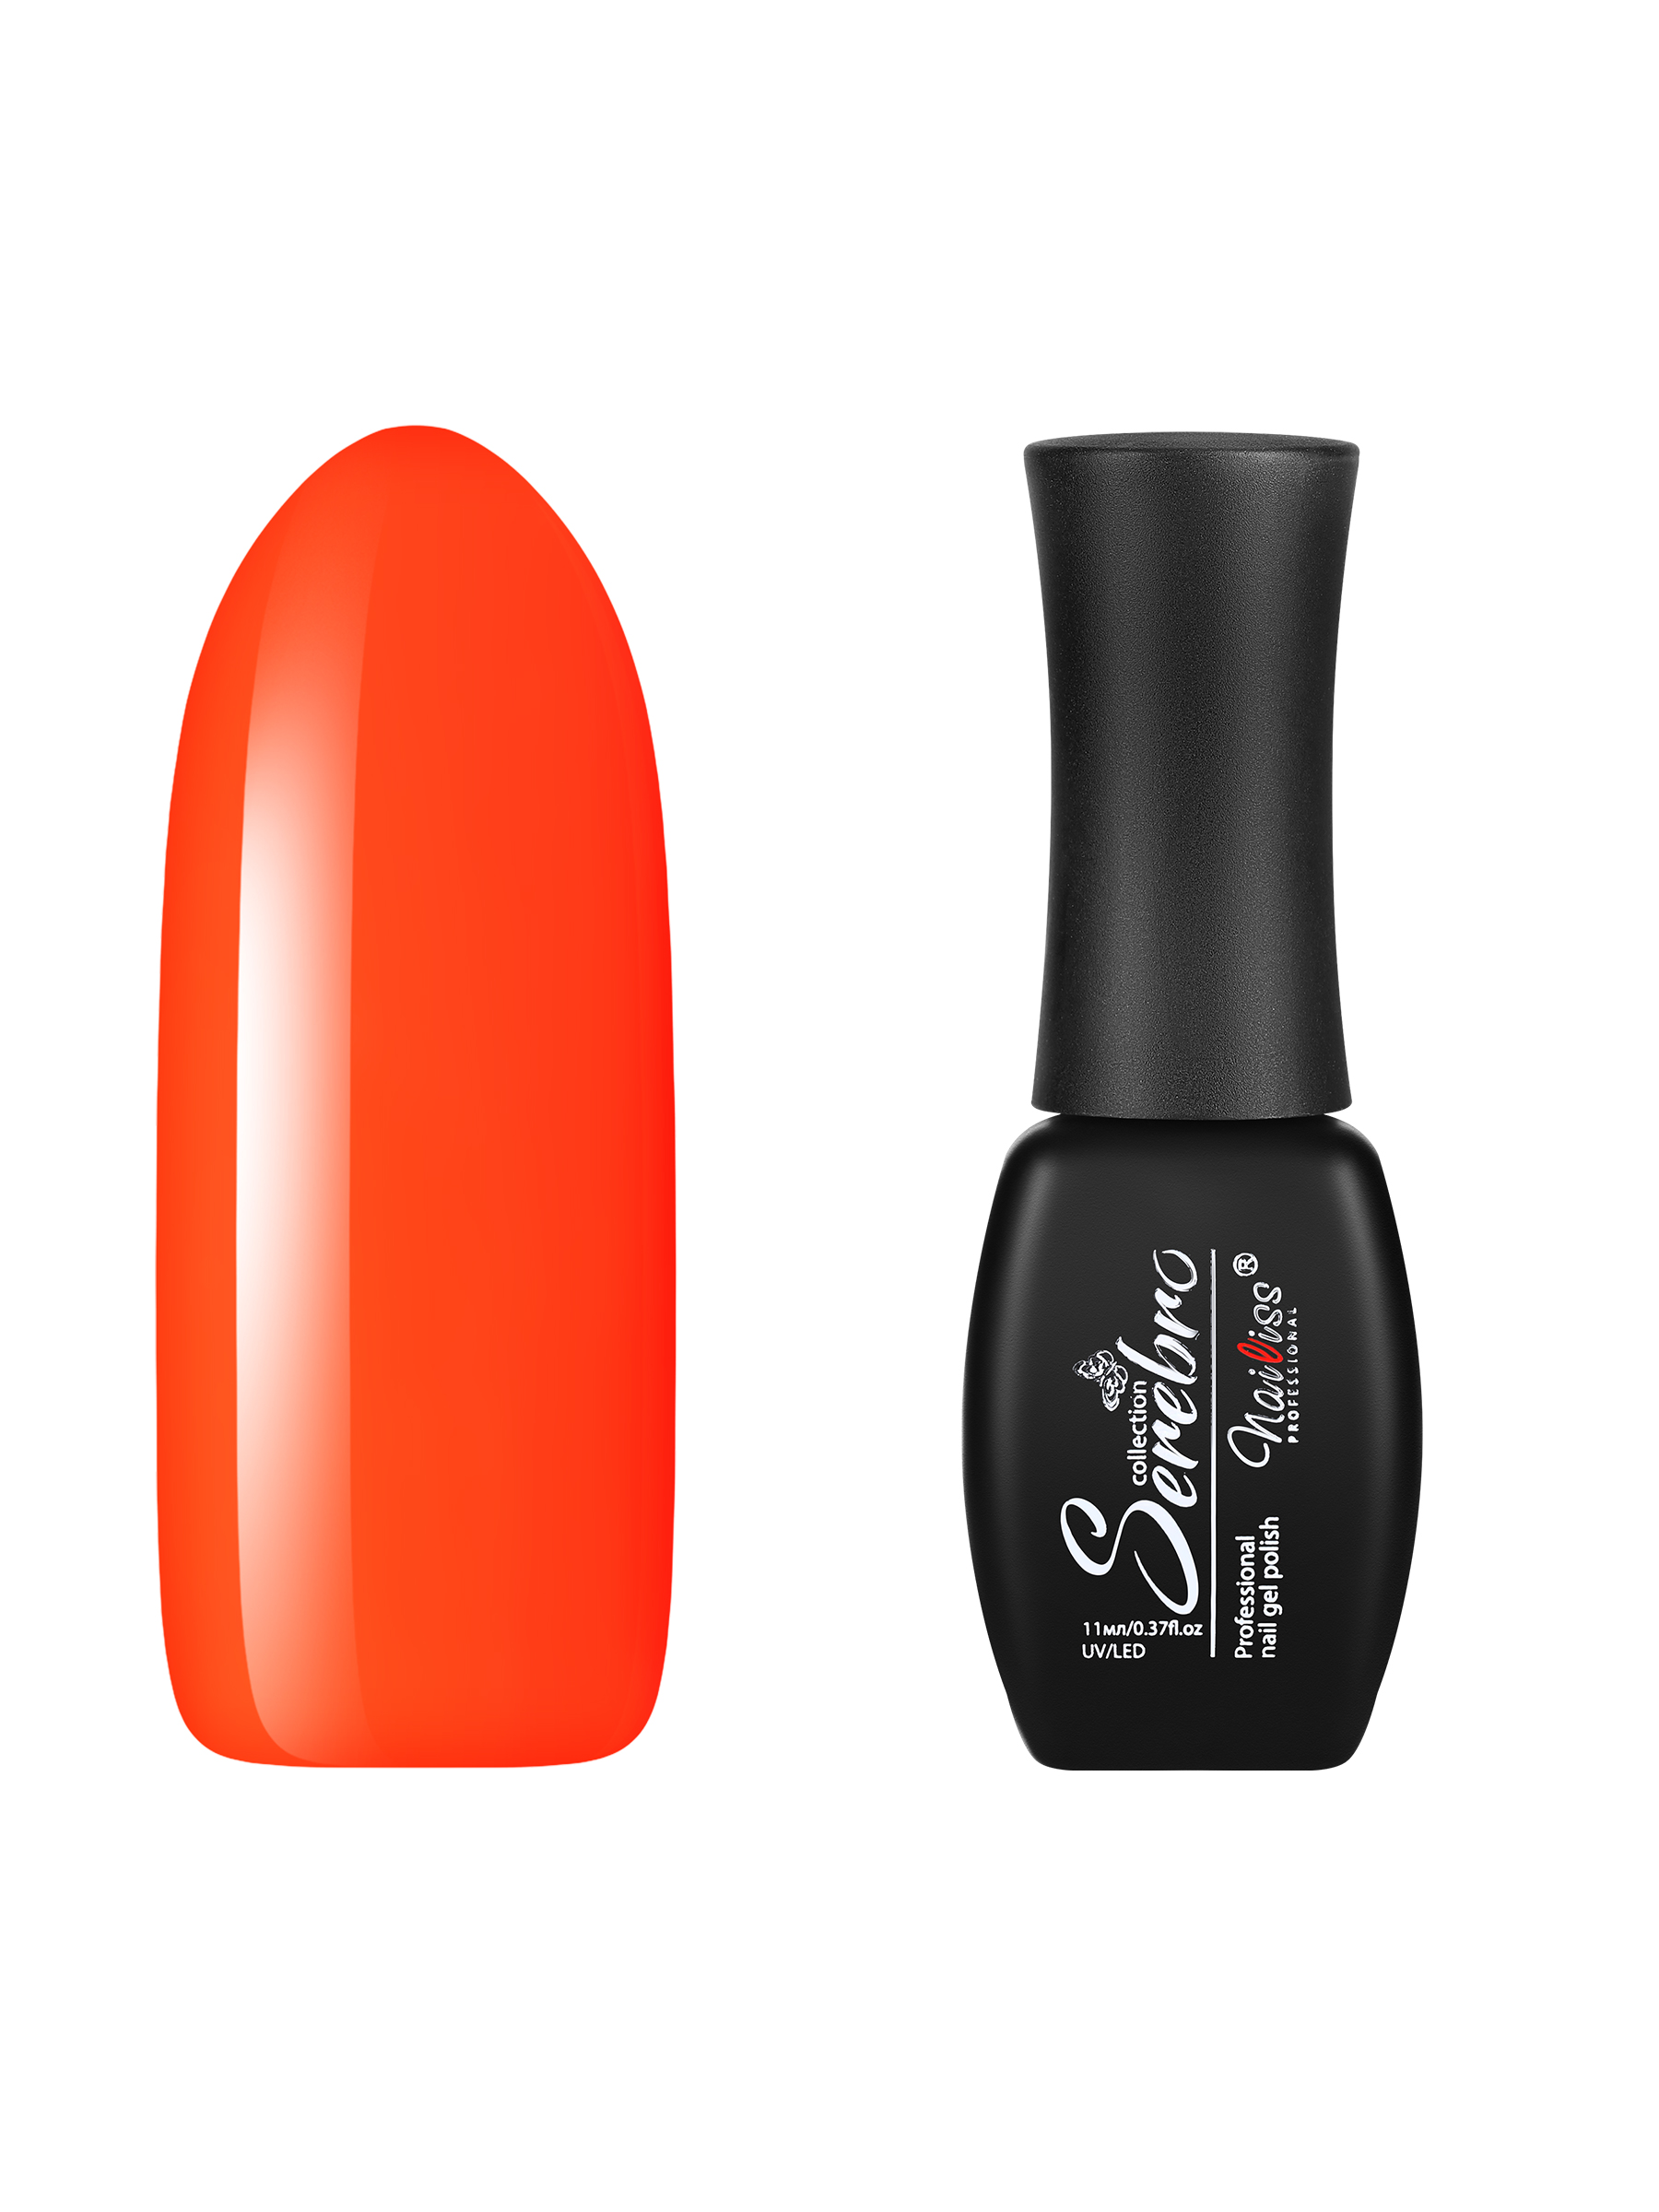 Гель-лак для ногтей Serebro, плотный цветной гипоаллергенный, насыщенный оранжевый, 11 мл ошейник дарэлл простой стандарт 1 слой безразмерный кожаный 25 ммх56 см оранжевый